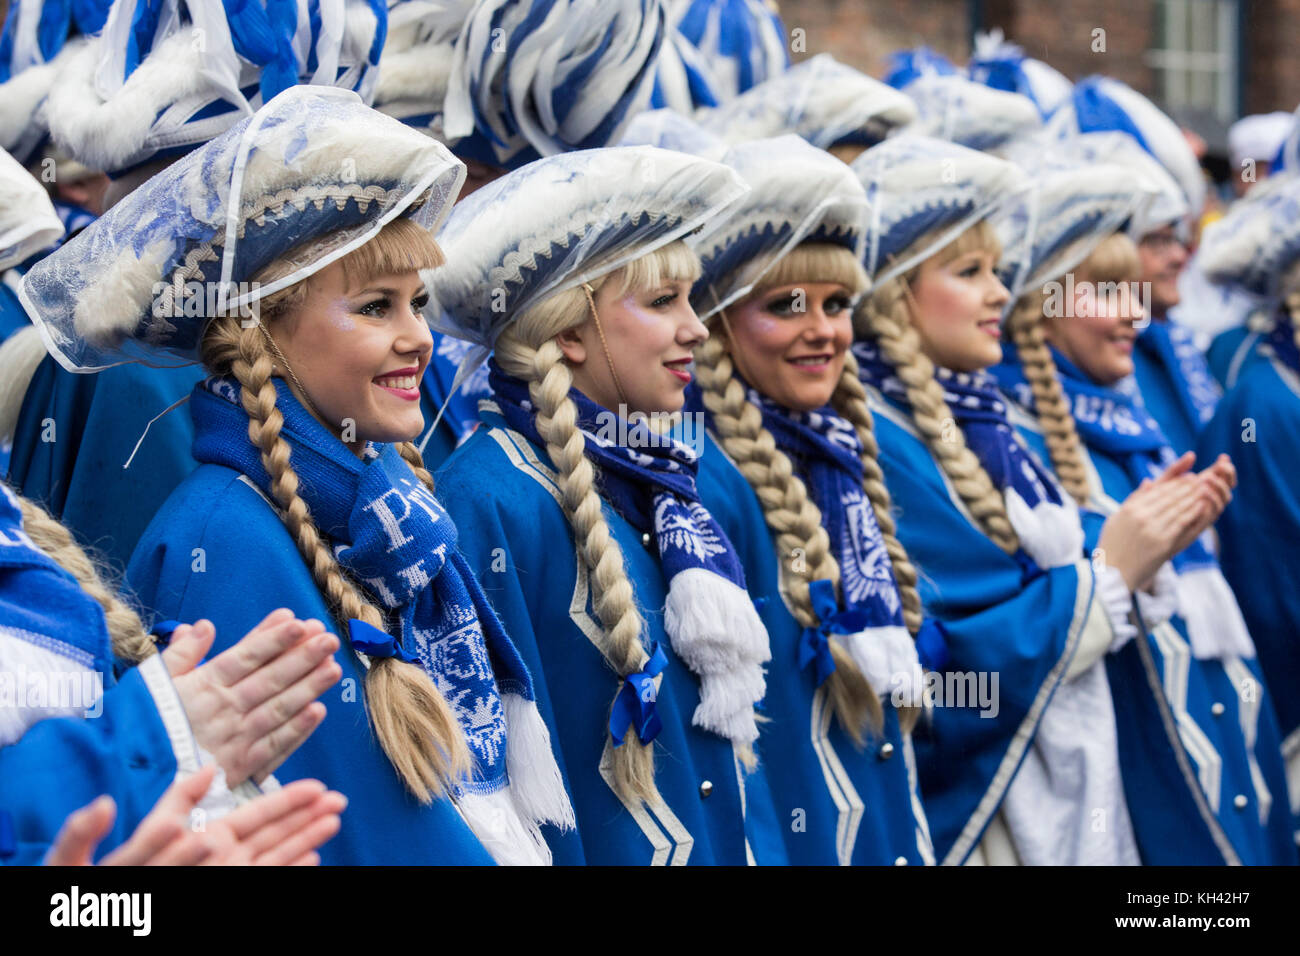 La stagione del Carnevale tedesco inizia tradizionalmente con l'evento Hoppeditz Erwachen il 11 novembre, Düsseldorf, Germania, e corre al Mercoledì delle Ceneri l'anno seguente. Tradizionale Tanzmariechen, ballerini di majorette. Foto Stock